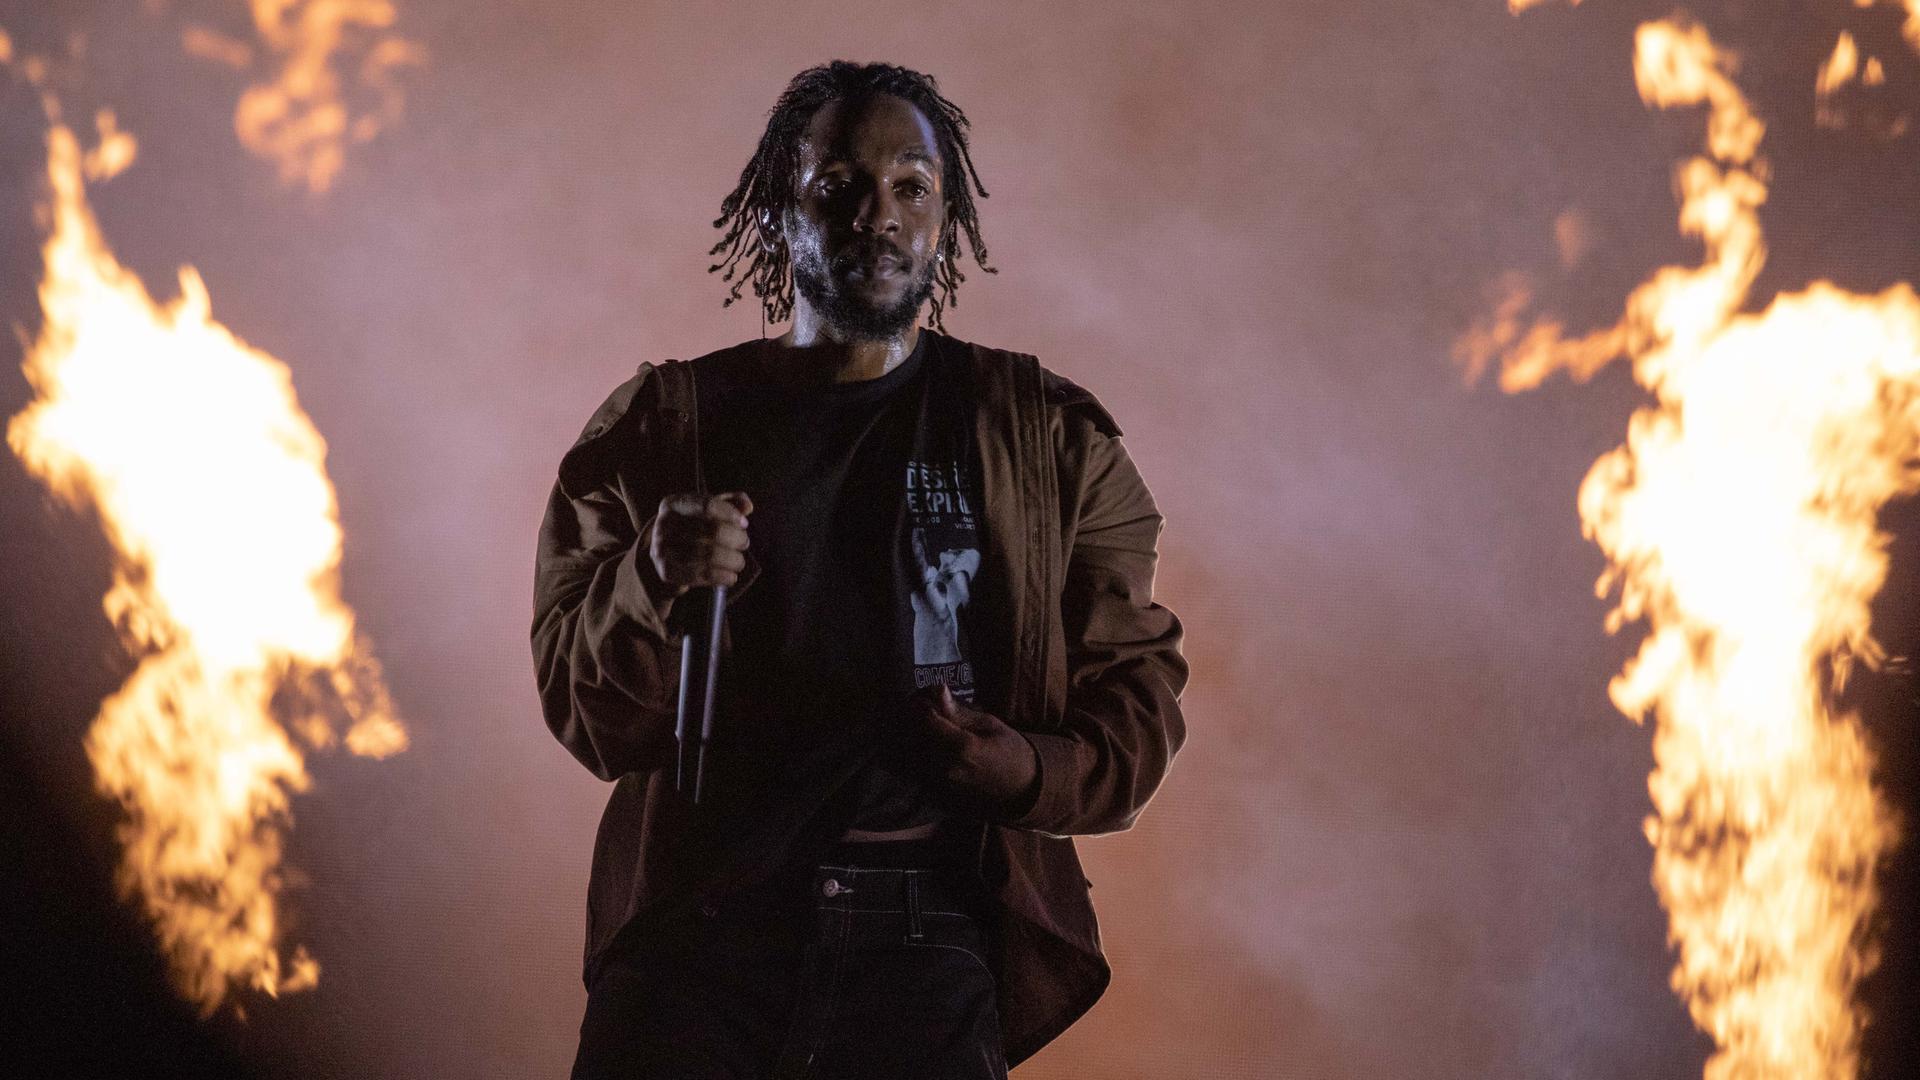 Der Rapper Kendrick Lamar steht auf einer Bühne, im Hintergrund sind Flammen zu sehen.